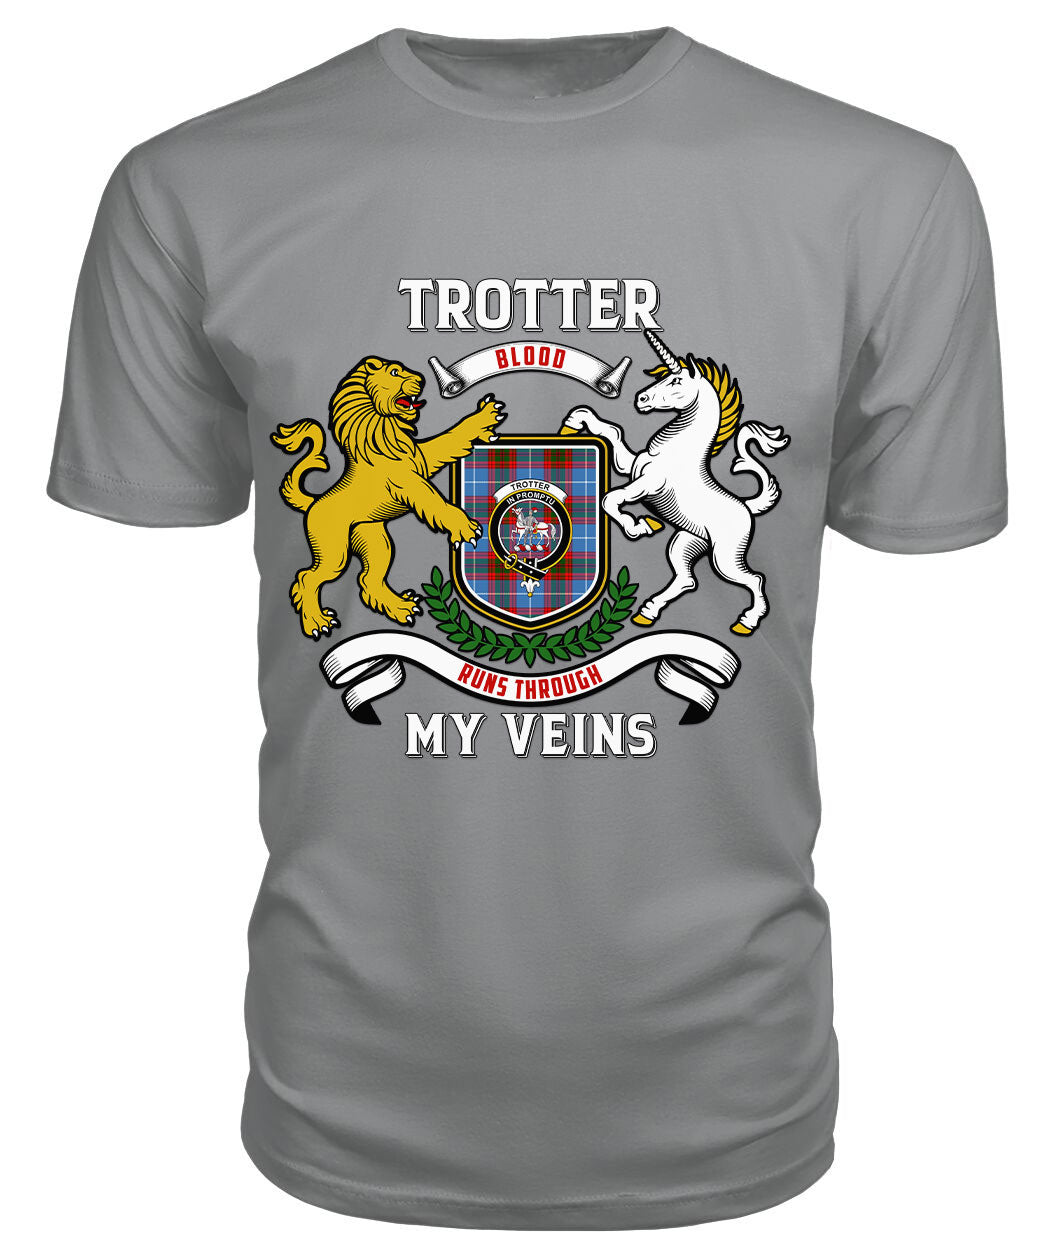 Trotter Tartan Crest 2D T-shirt - Blood Runs Through My Veins Style